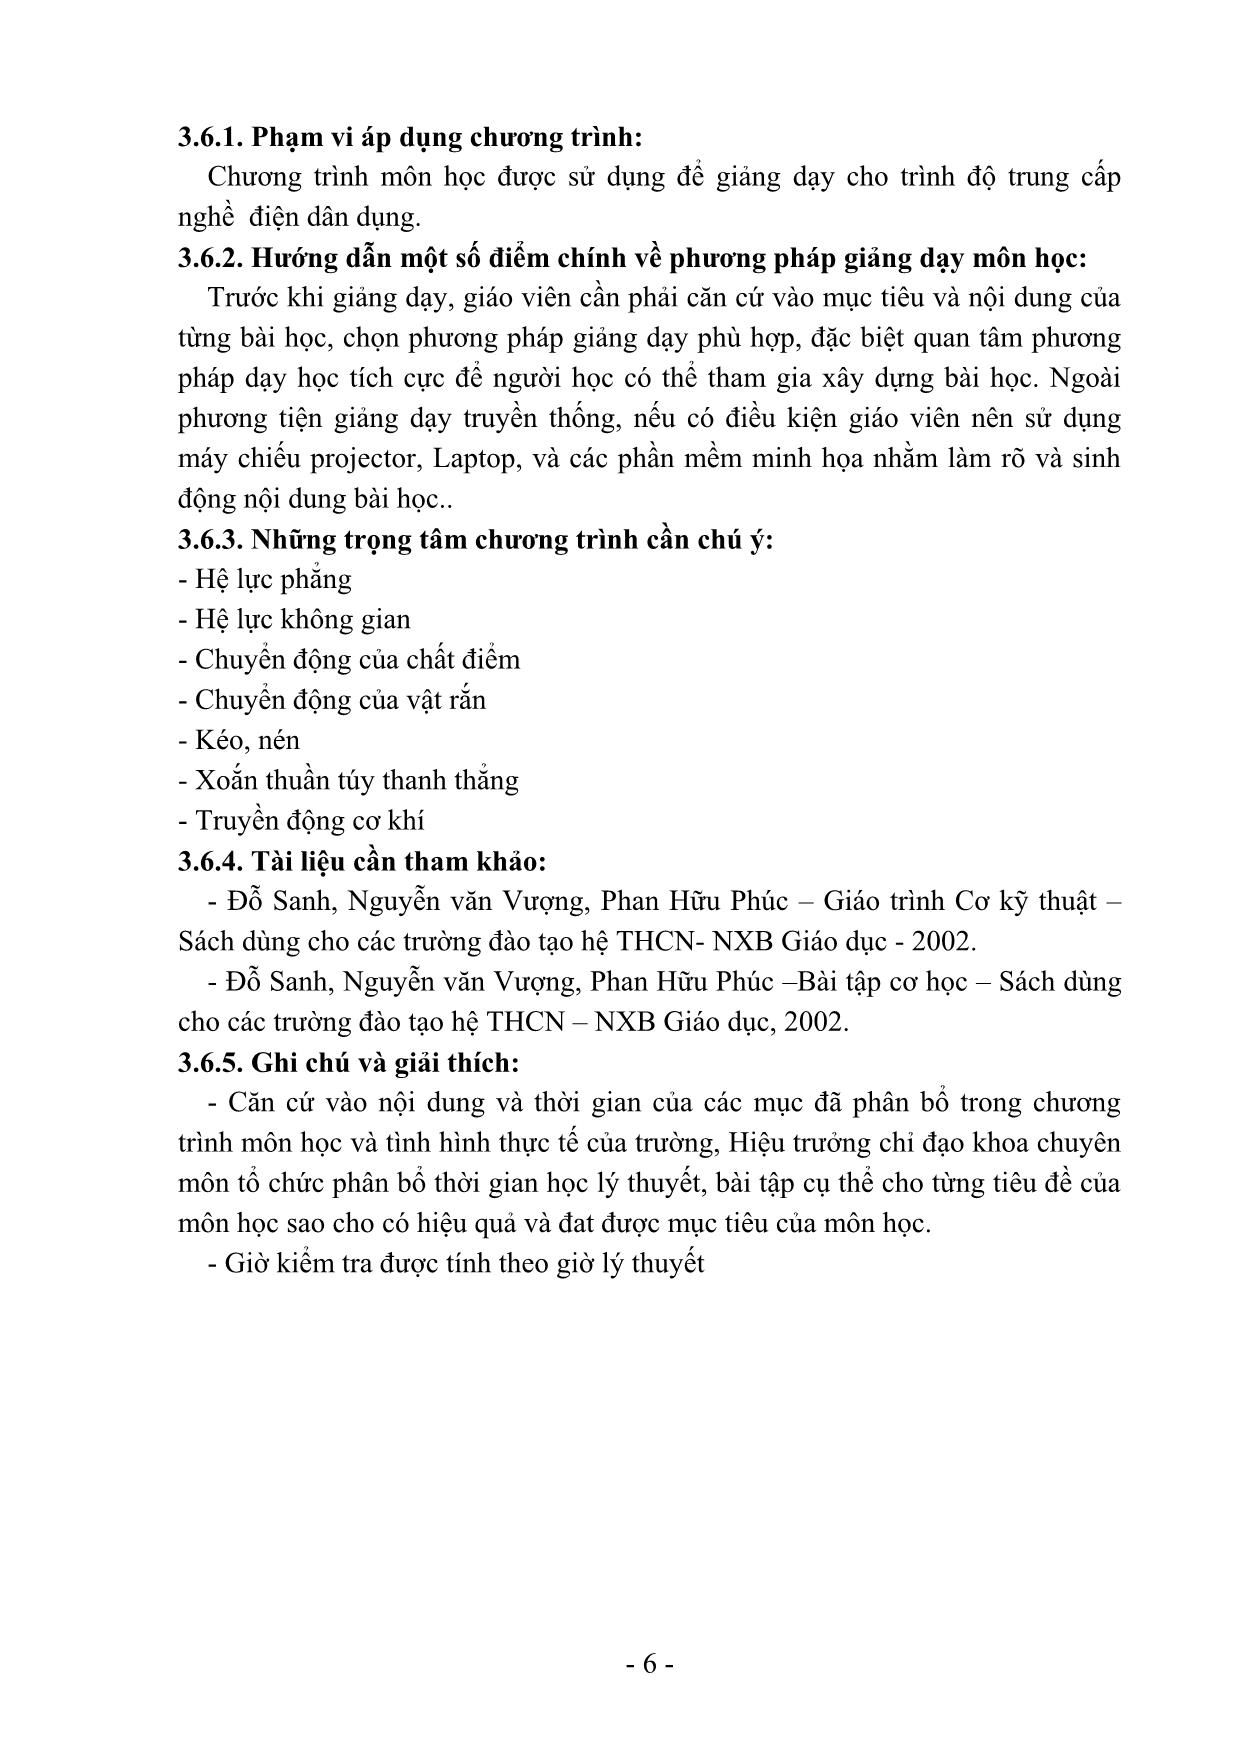 Giáo trình Cơ kỹ thuật (Mới) trang 6